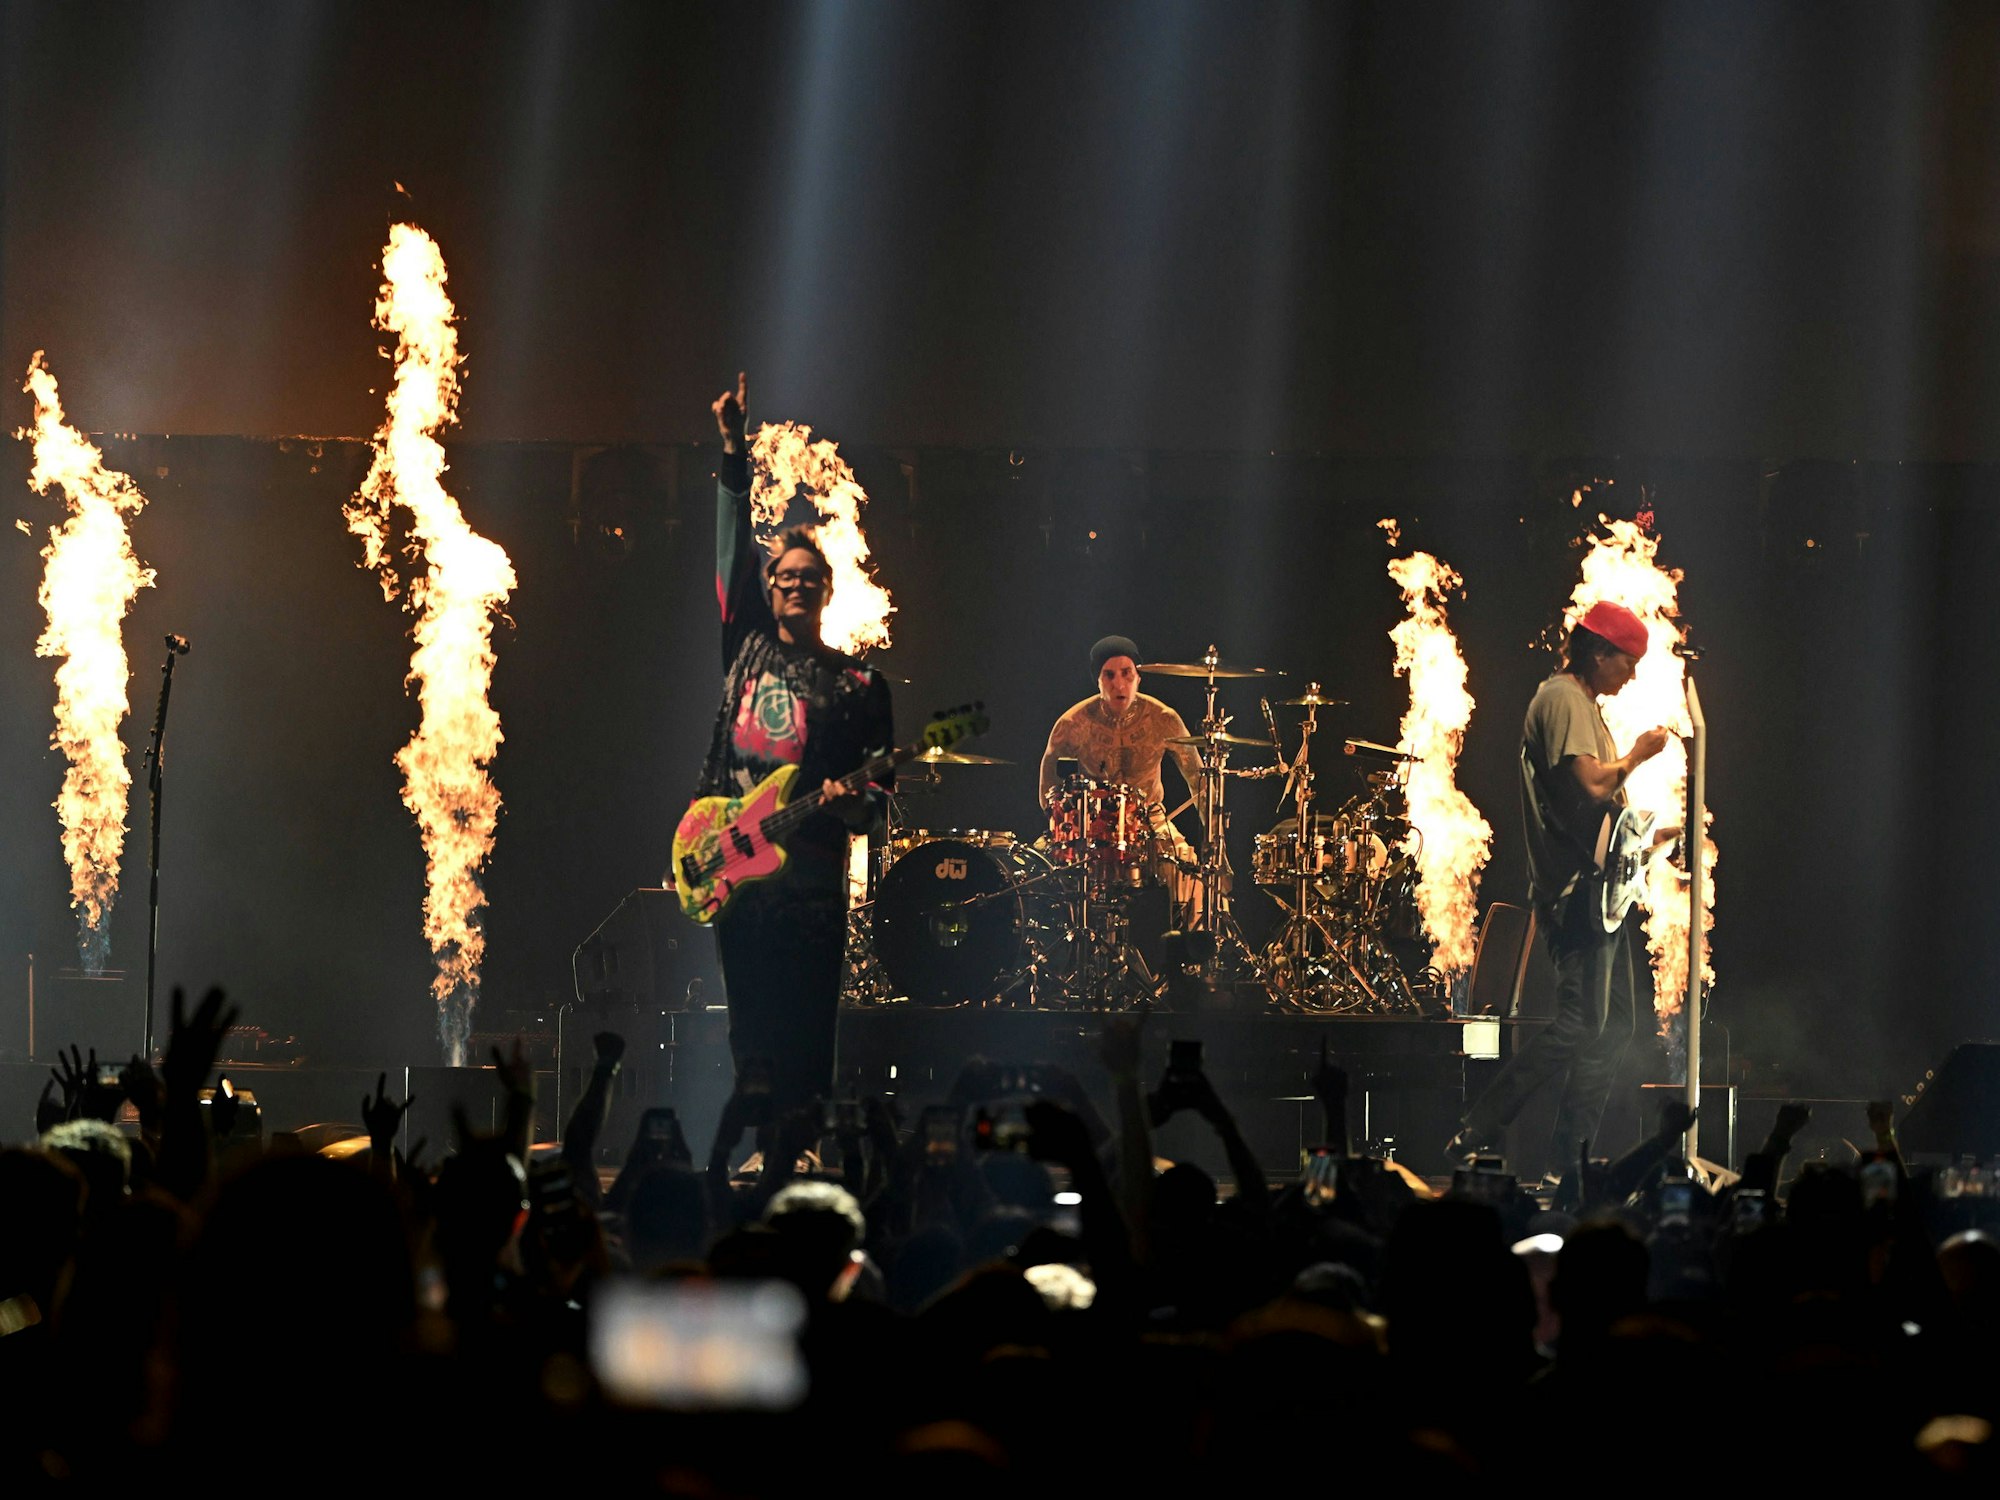 Blink-182 performt mit Feuerfontänen im Hintergrund ein Konzert in Florida.